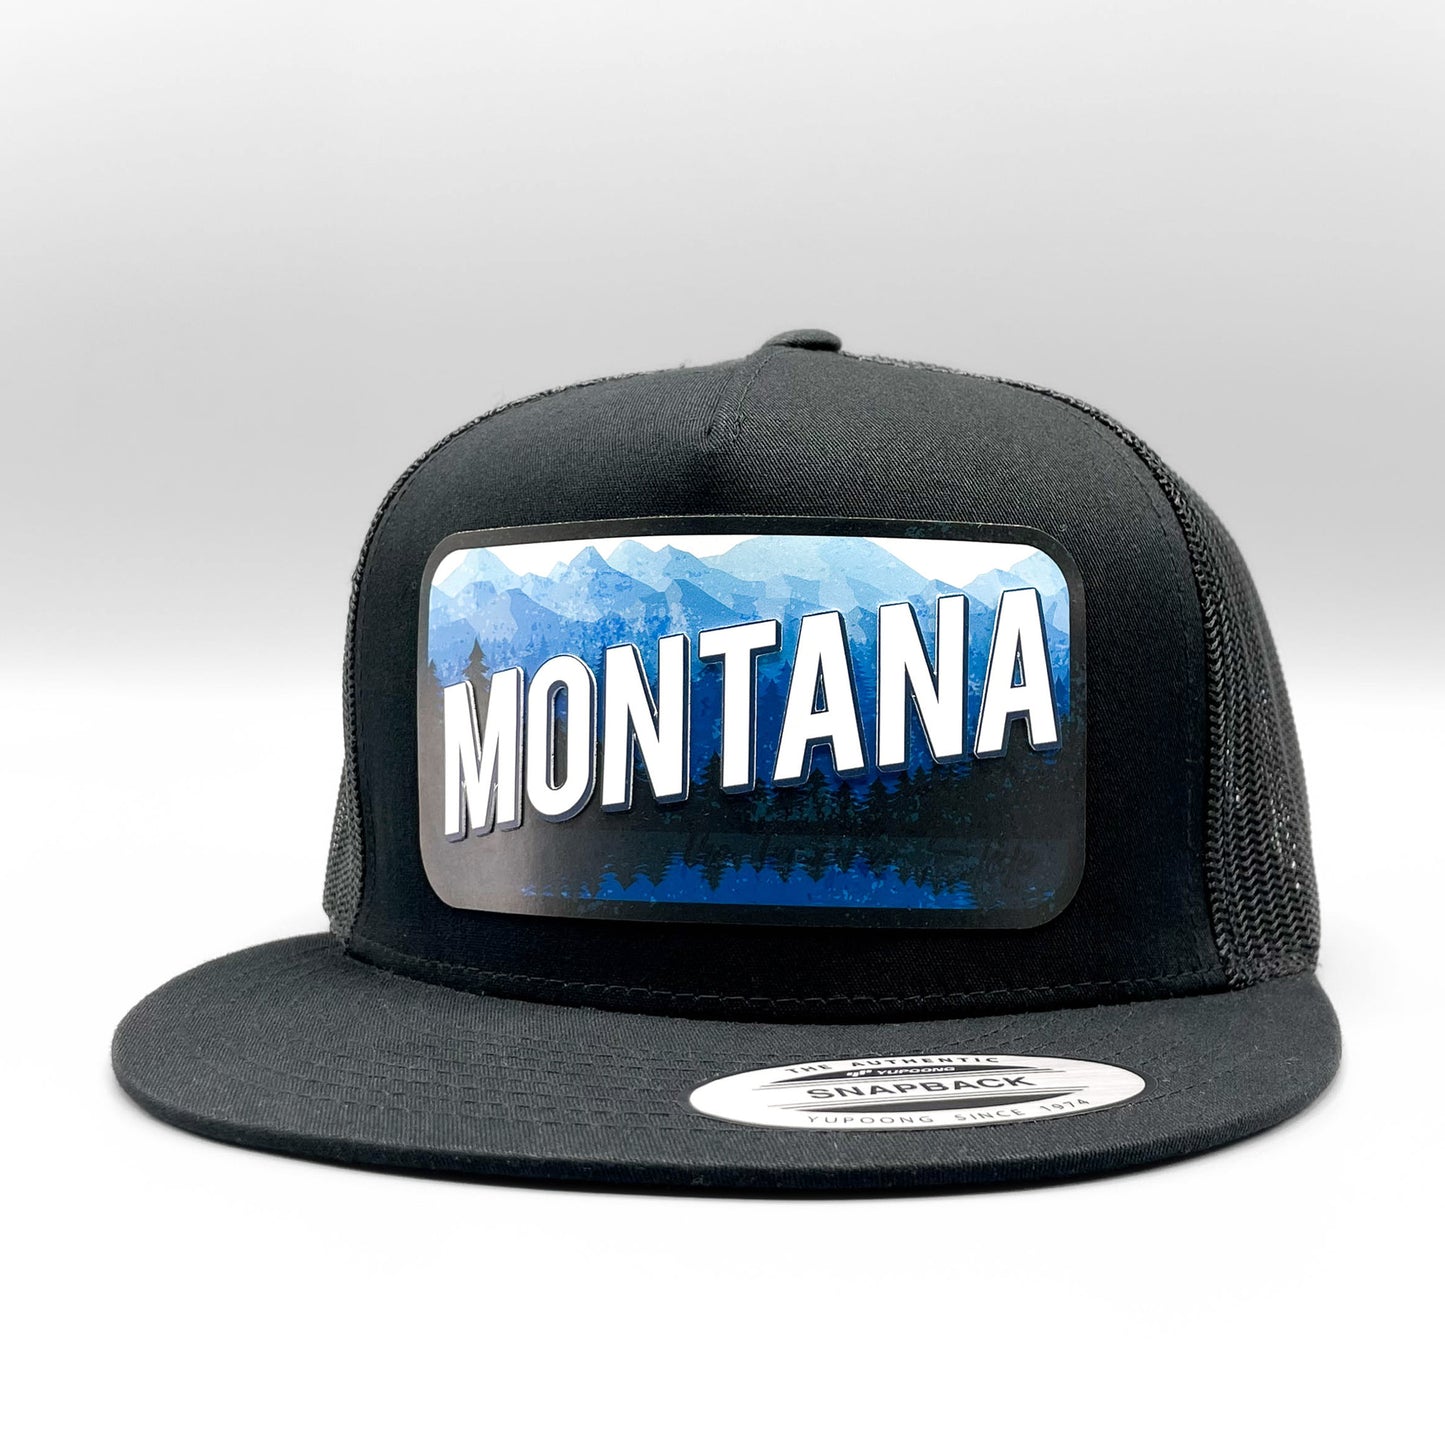 Sublimated Low Profile Trucker Hat - Concept Design Studios, Bozeman Montana